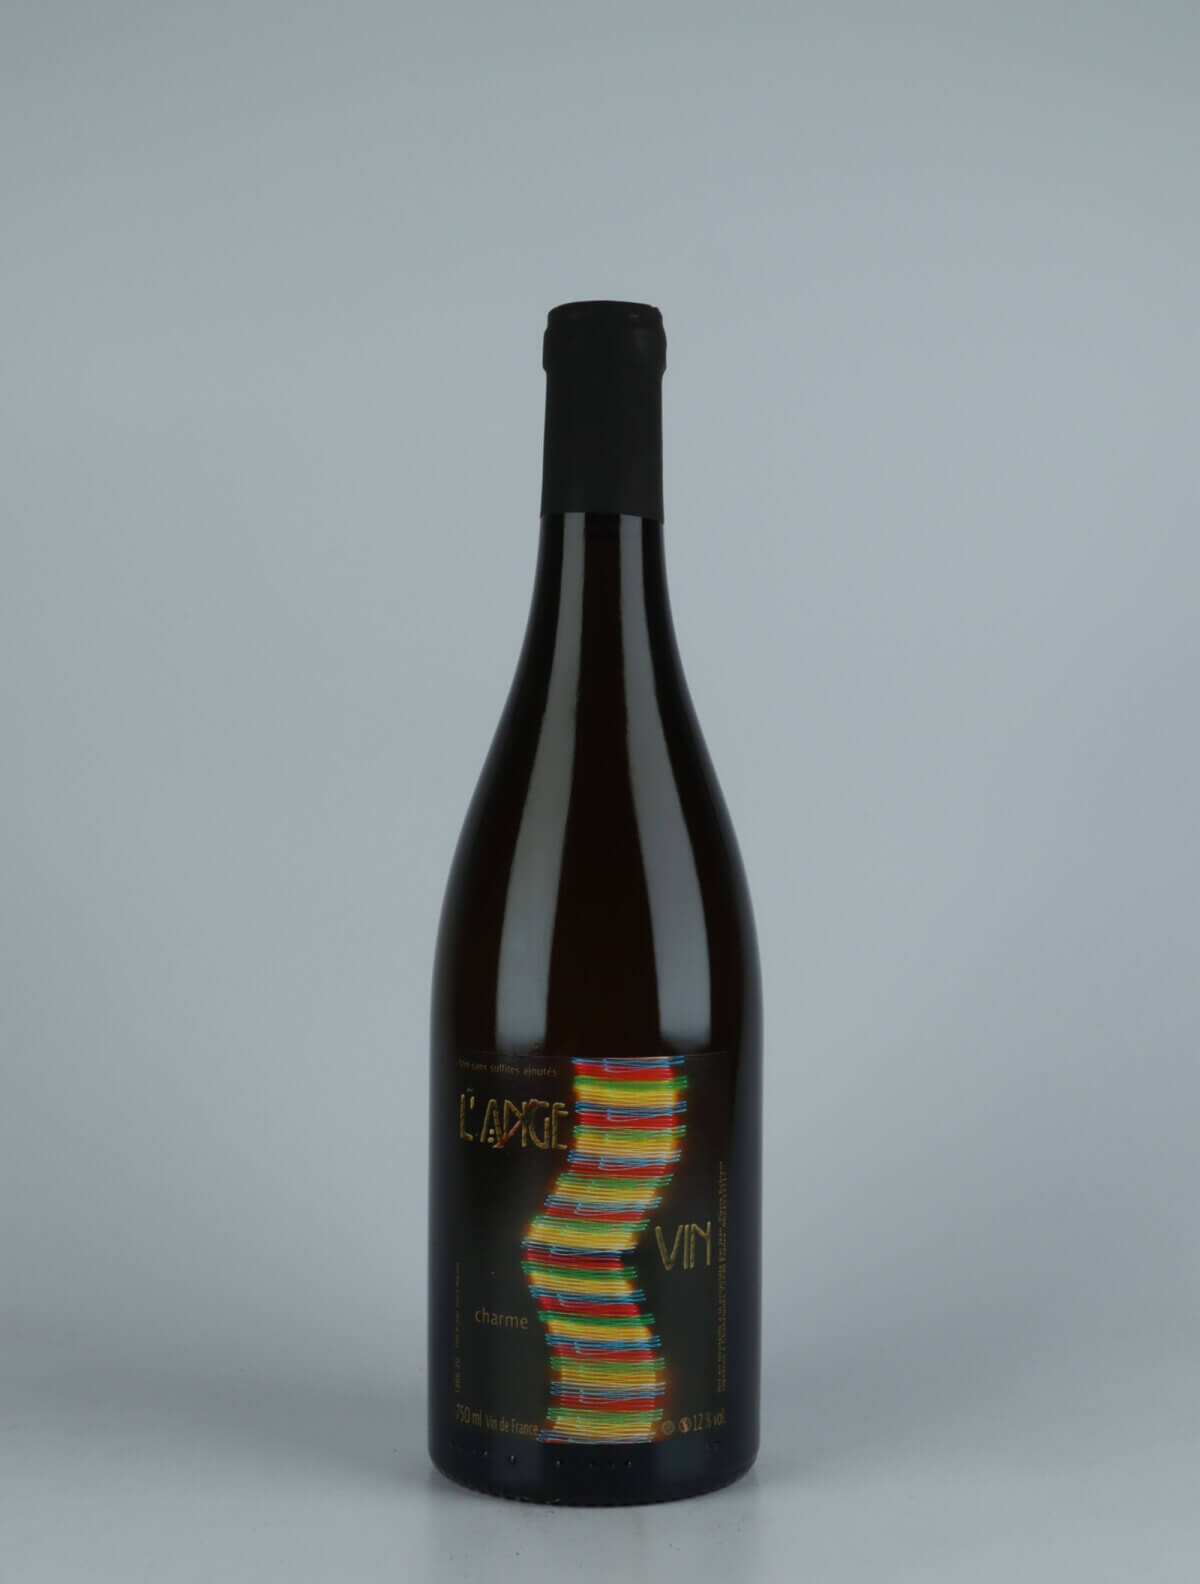 A bottle 2020 Charme White wine from Jean-Pierre Robinot, Loire in France